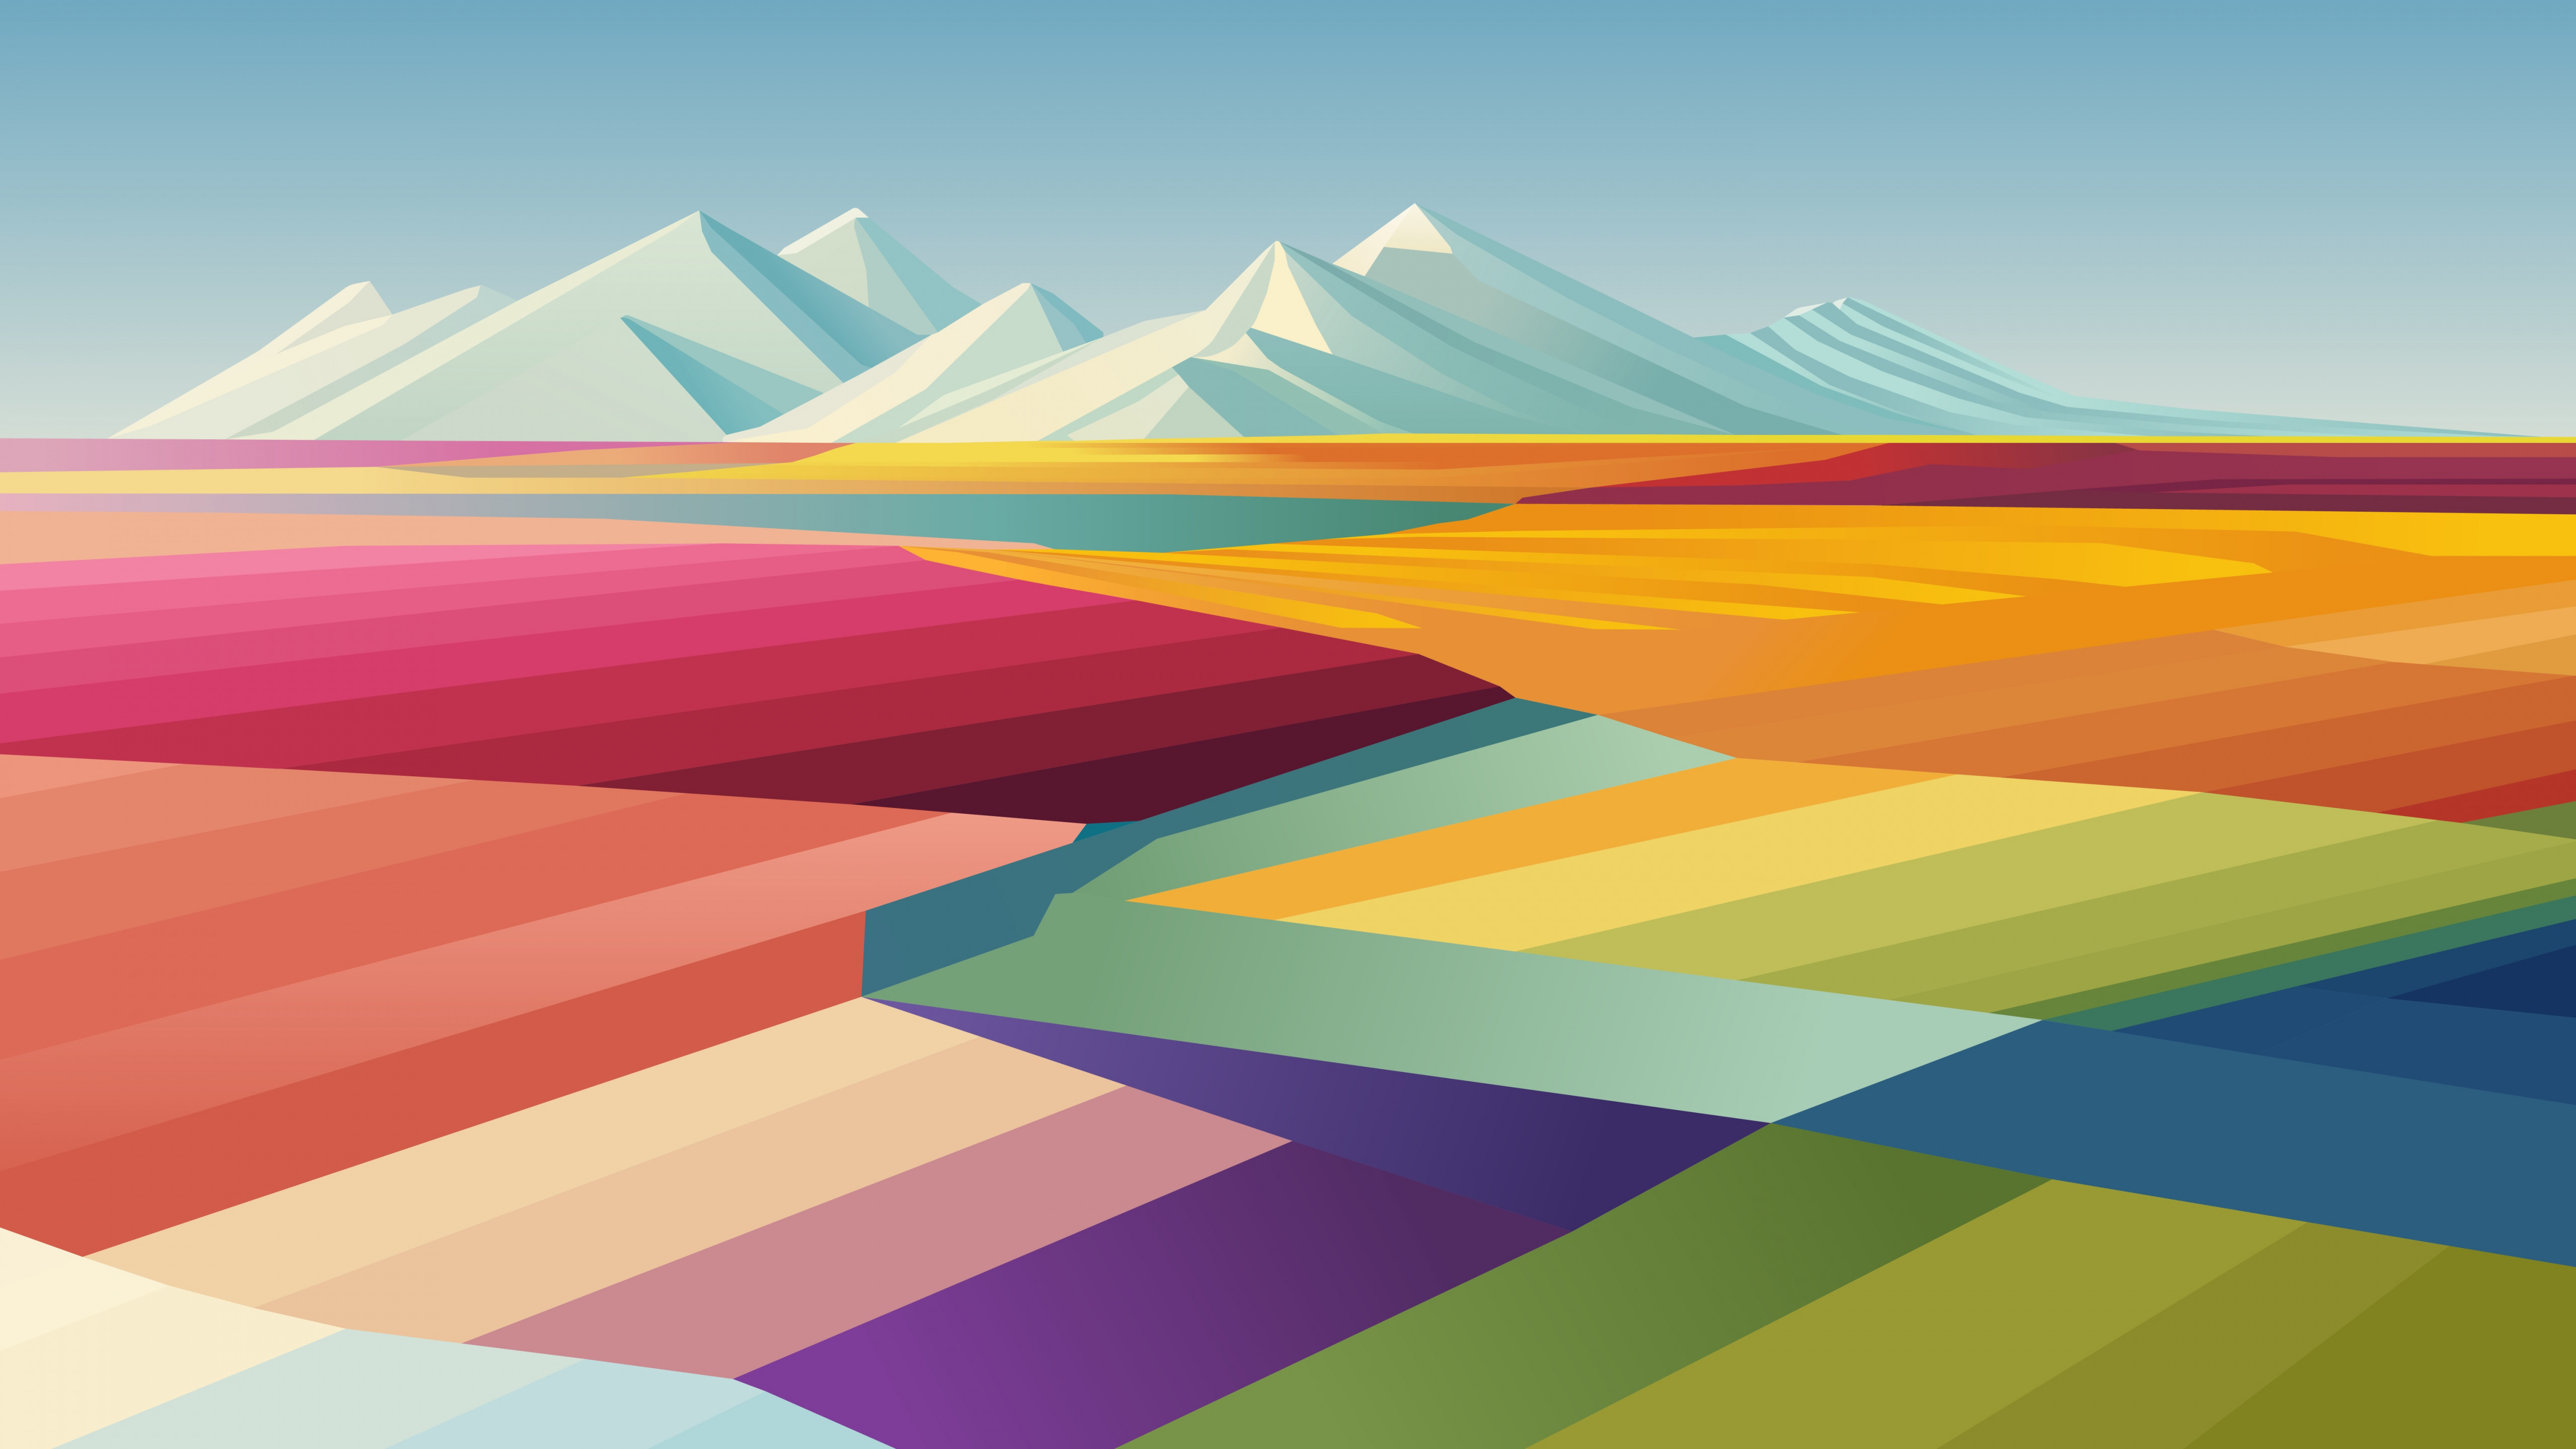 Khám phá thế giới ảo đầy màu sắc với những hình nền Macbook 5k đẹp mắt. Với nhiều phong cách và kiểu dáng khác nhau, bạn sẽ tìm được điều mà mình yêu thích. Hãy cập nhật ngay những hình nền mới nhất, để cảm nhận một không gian đẹp mắt trên máy tính của mình.